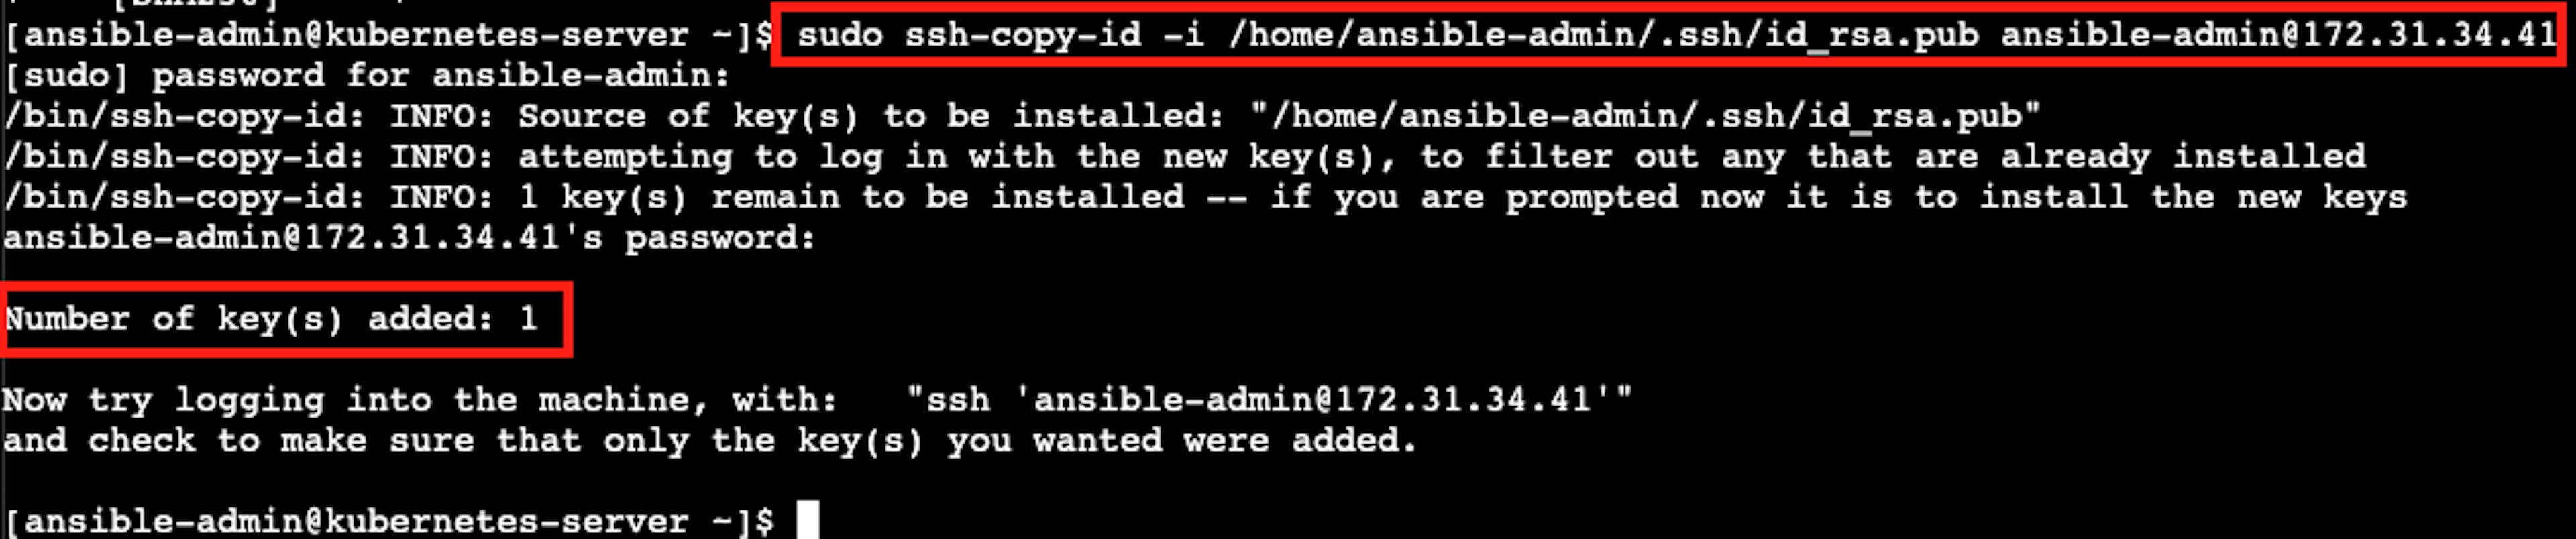 La captura de pantalla del resultado exitoso de la instalación de autenticación ssh sin contraseña